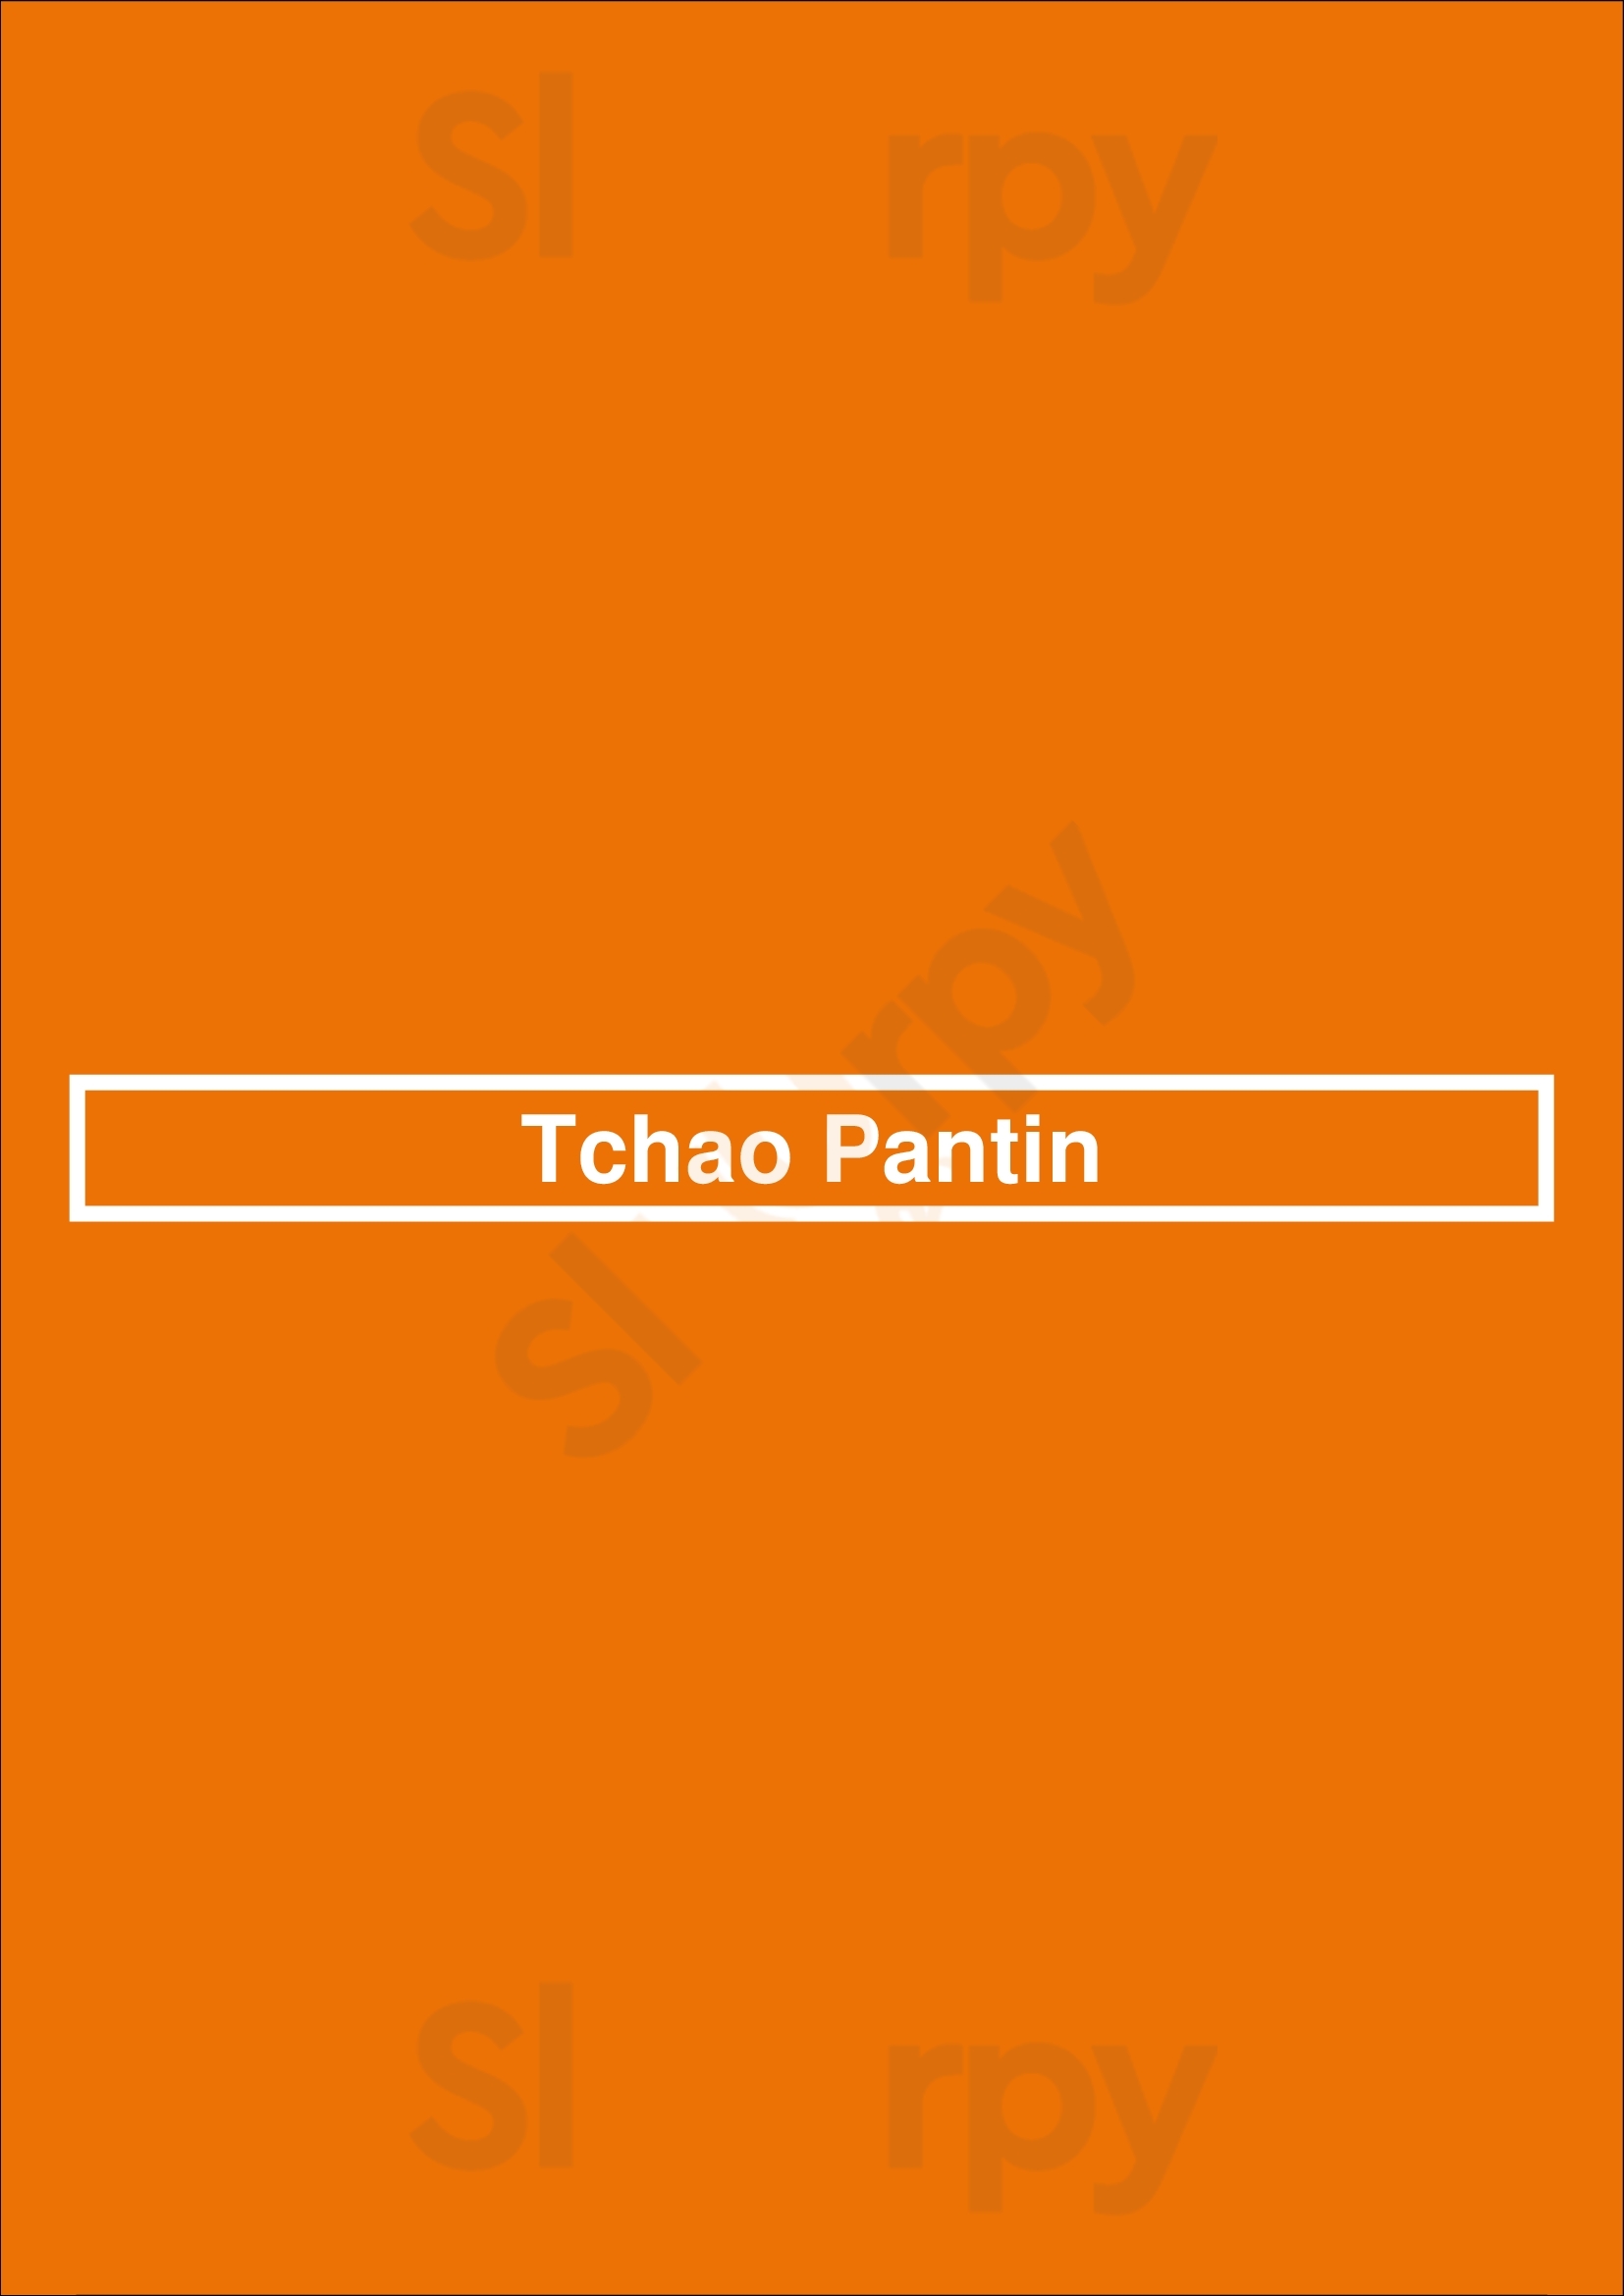 Tchao Pantin Pantin Menu - 1